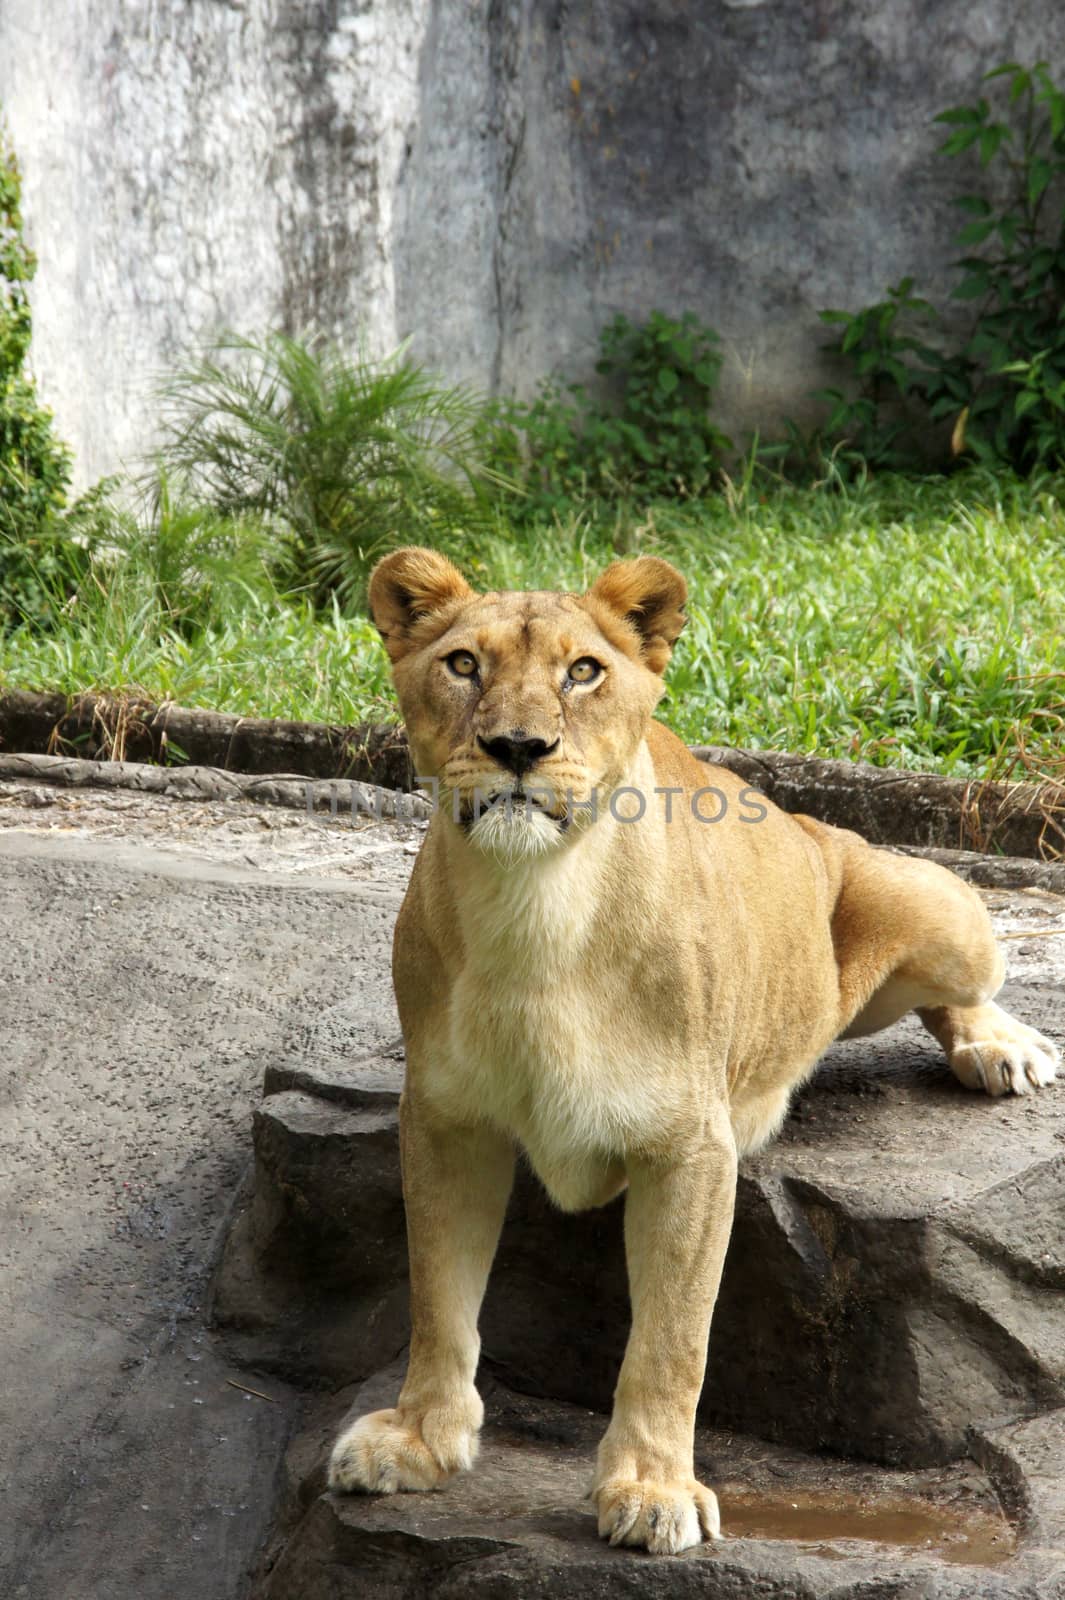 Portrait Of Wild Lion by Noppharat_th